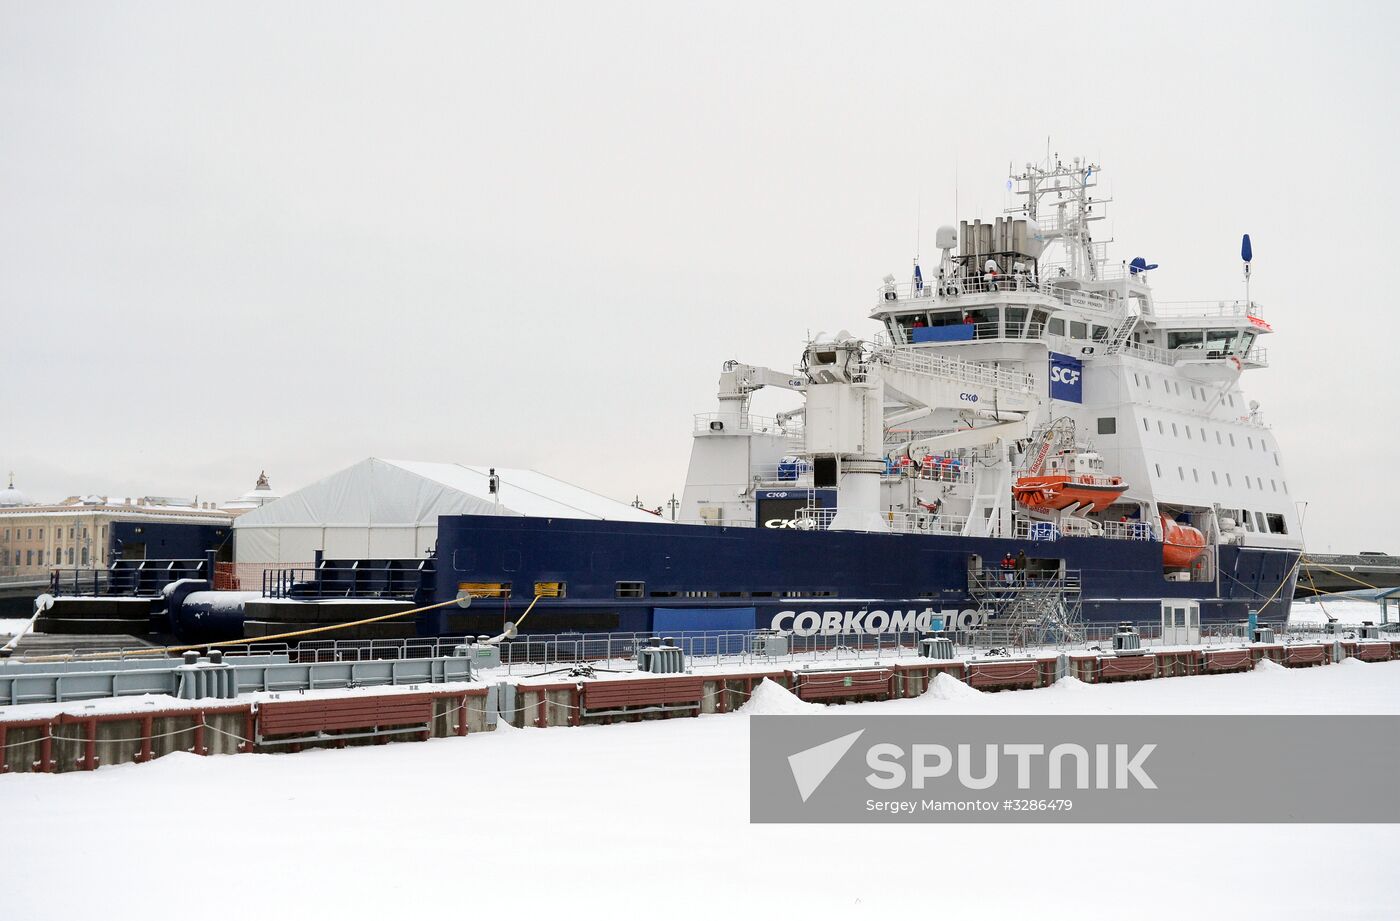 Naming ceremony for Yevgeny Primakov vessel in St. Petersburg